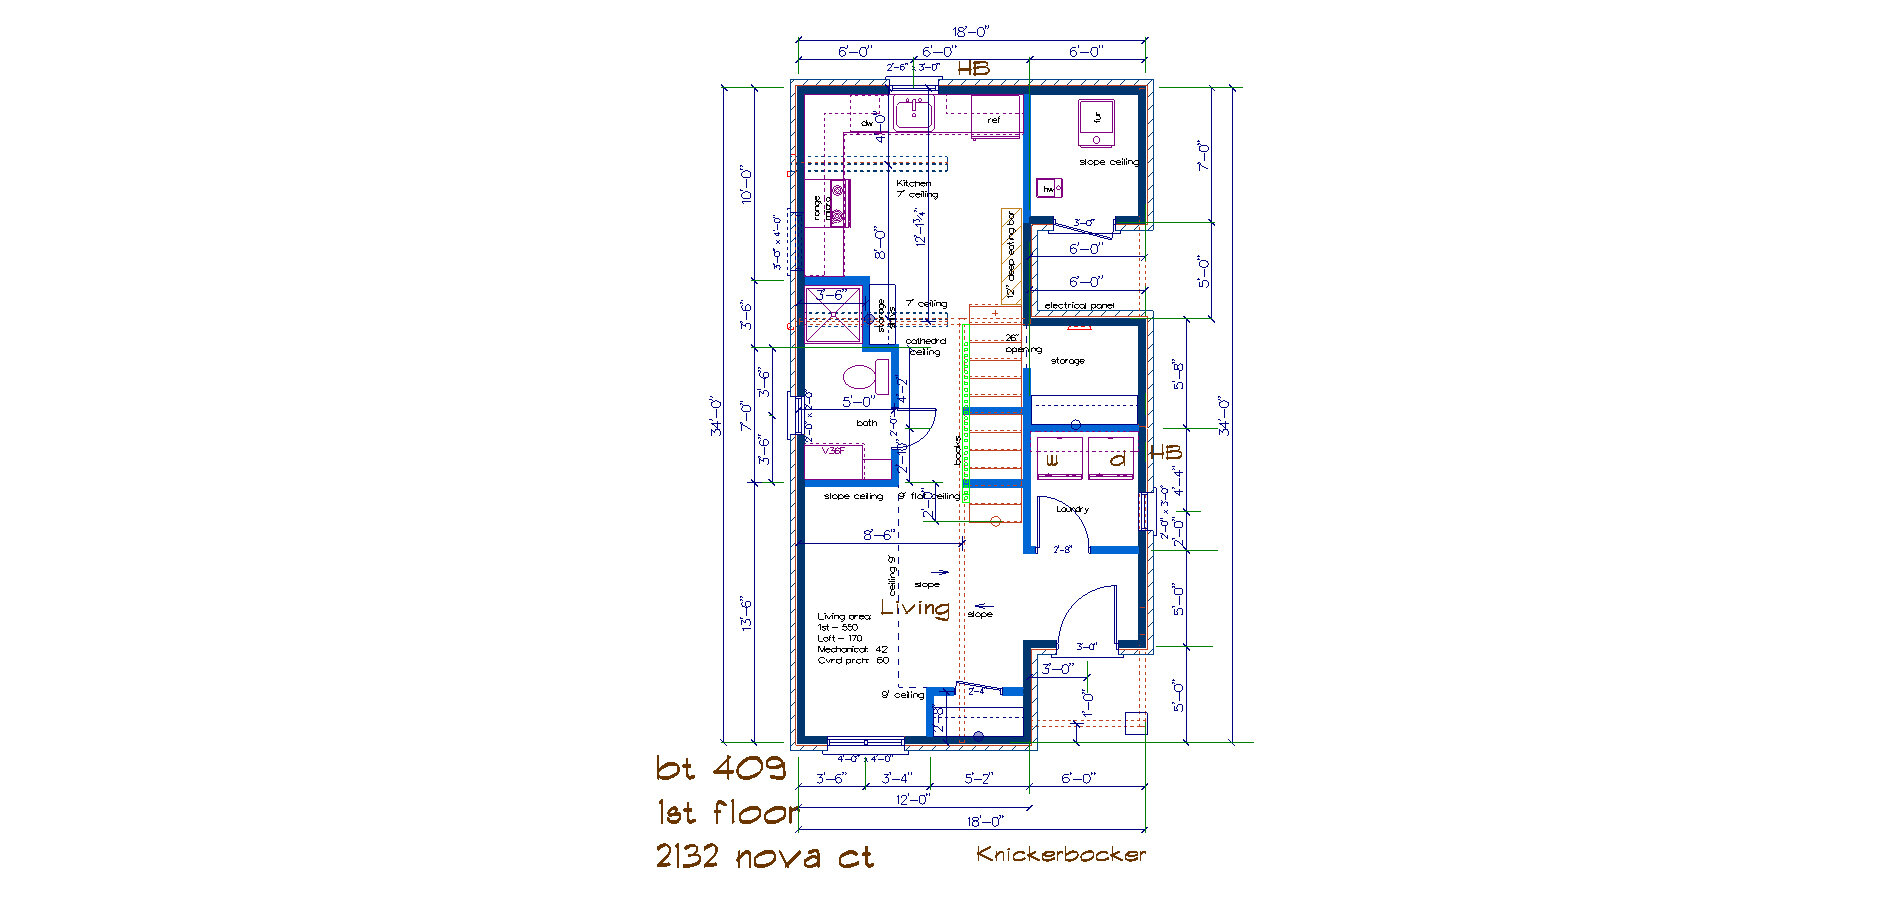 BT 409 Knickerbocker 1st 2132 nova ct floor plan.jpg